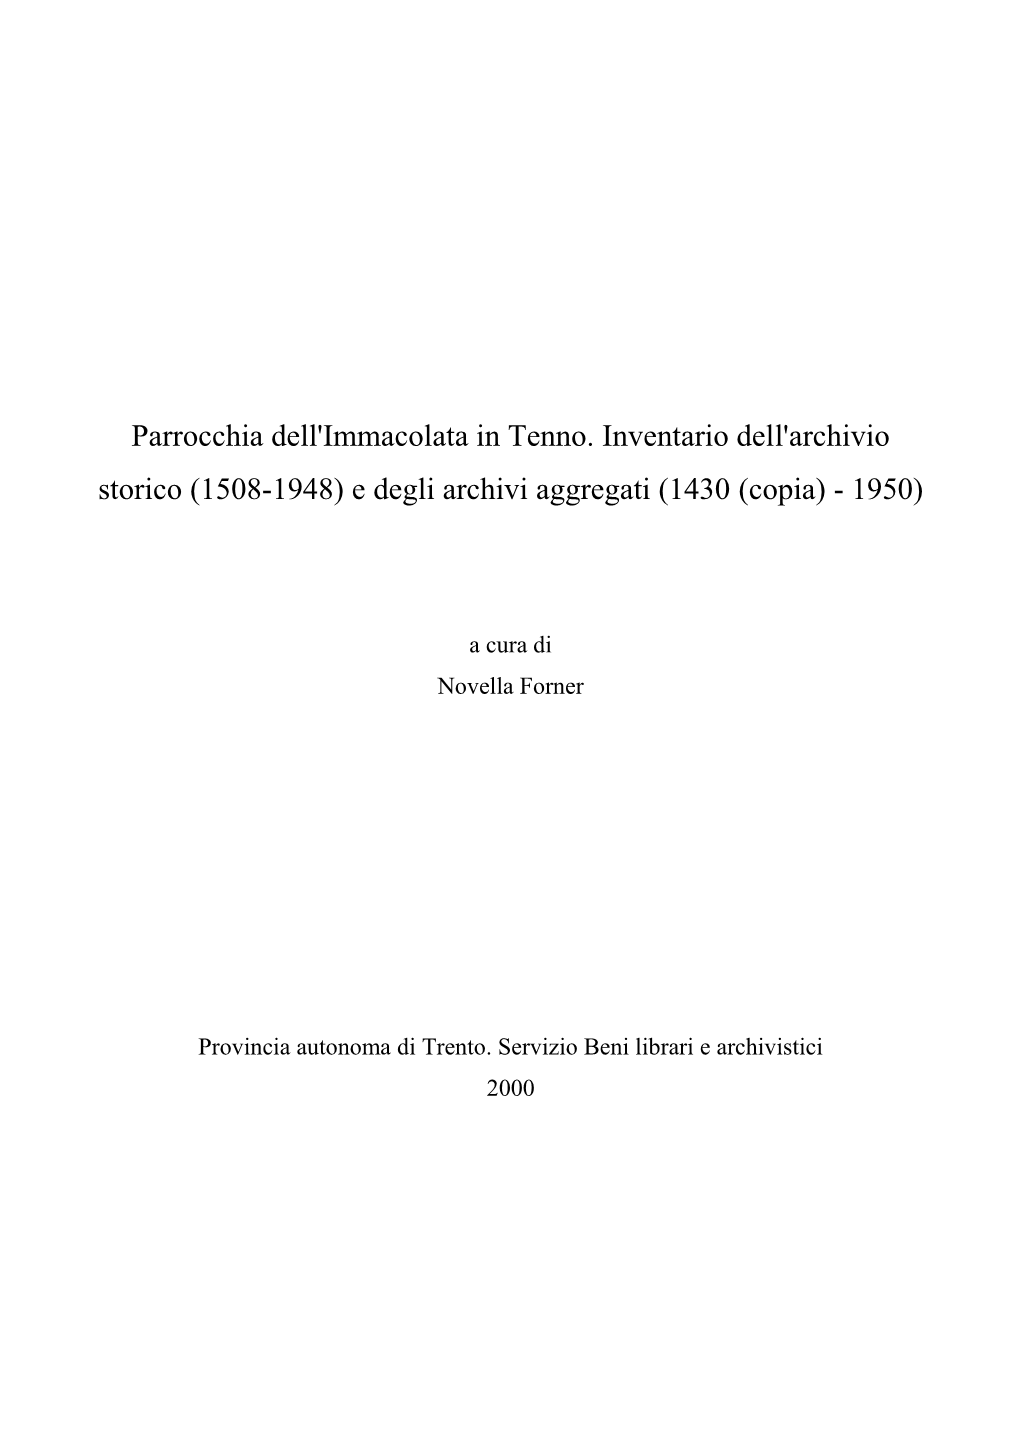 Parrocchia Dell'immacolata in Tenno. Inventario Dell'archivio Storico (1508-1948) E Degli Archivi Aggregati (1430 (Copia) - 1950)